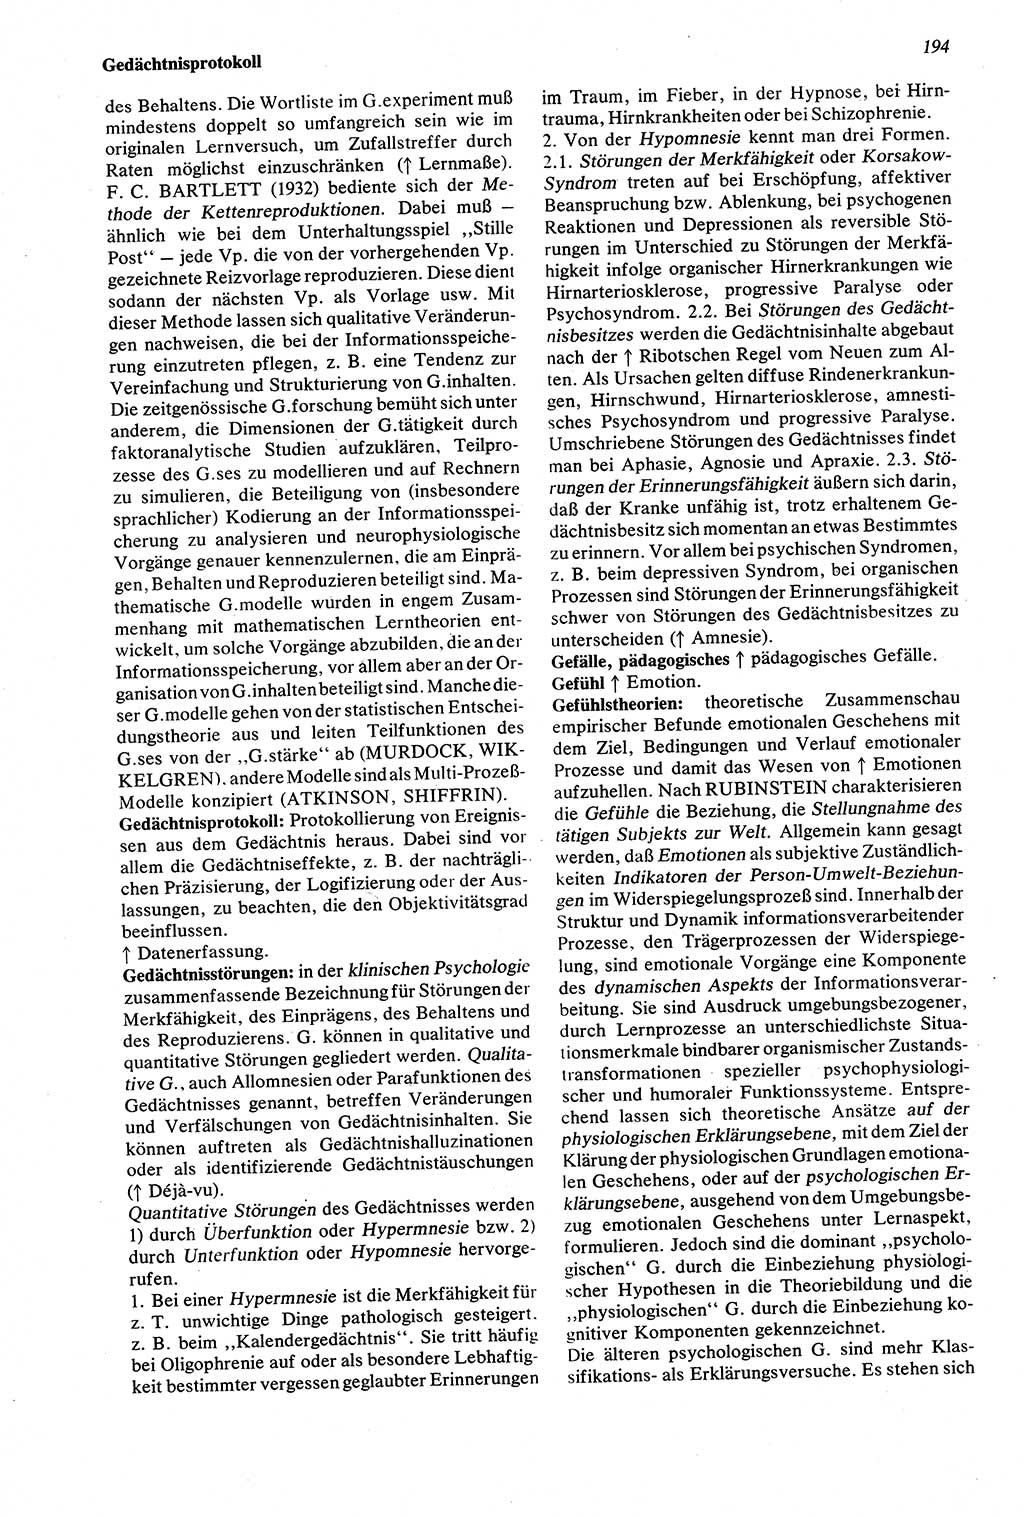 Wörterbuch der Psychologie [Deutsche Demokratische Republik (DDR)] 1976, Seite 194 (Wb. Psych. DDR 1976, S. 194)